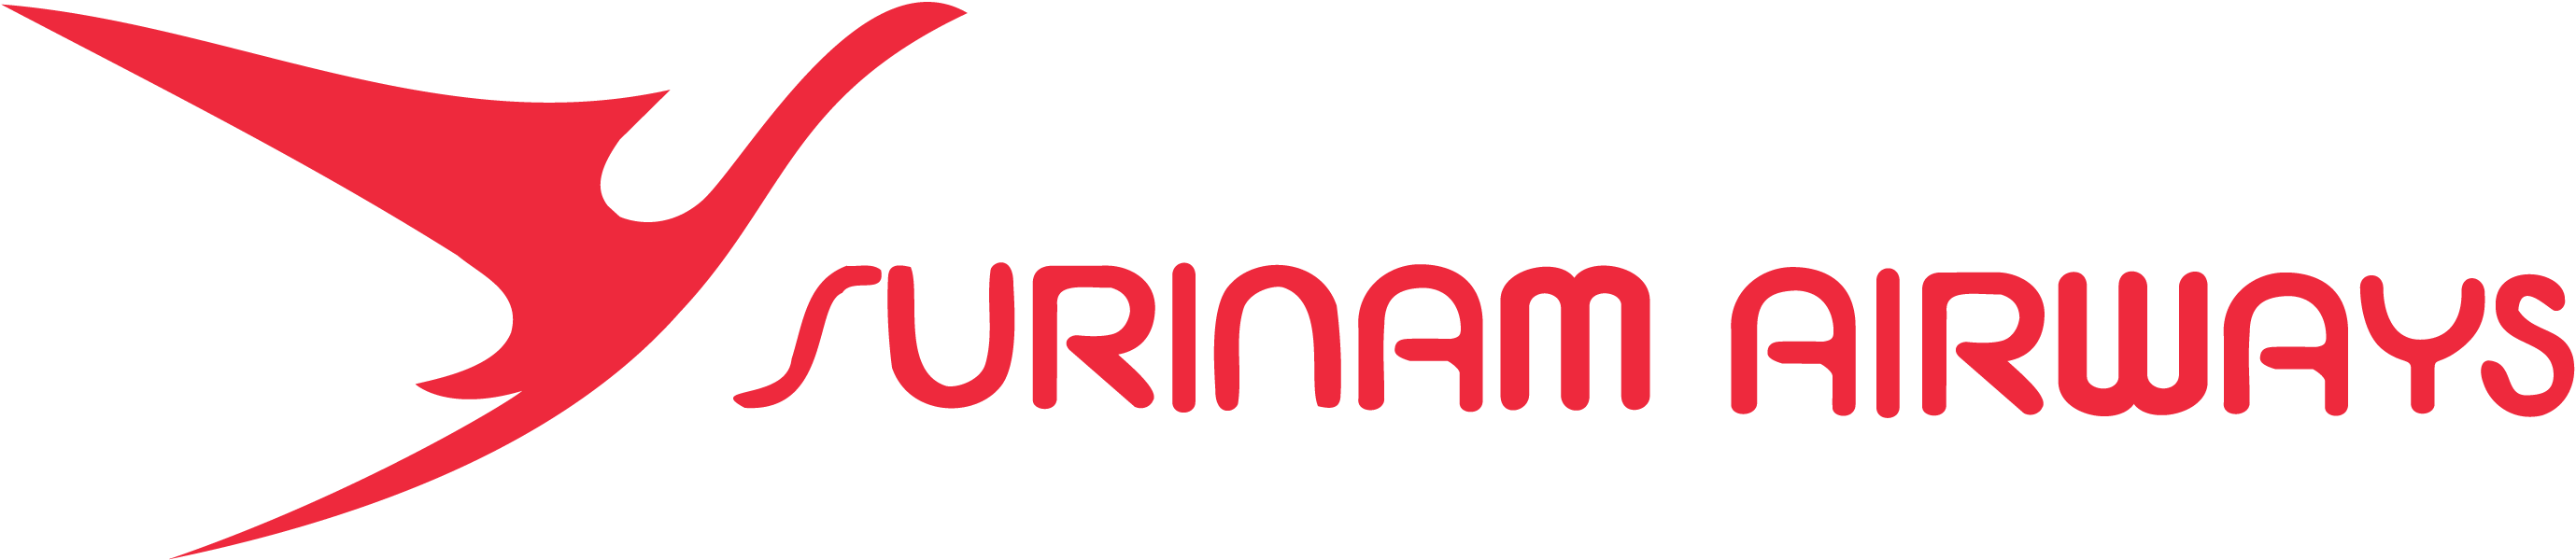 Aanbiedingen-Surinam-Airways-logo